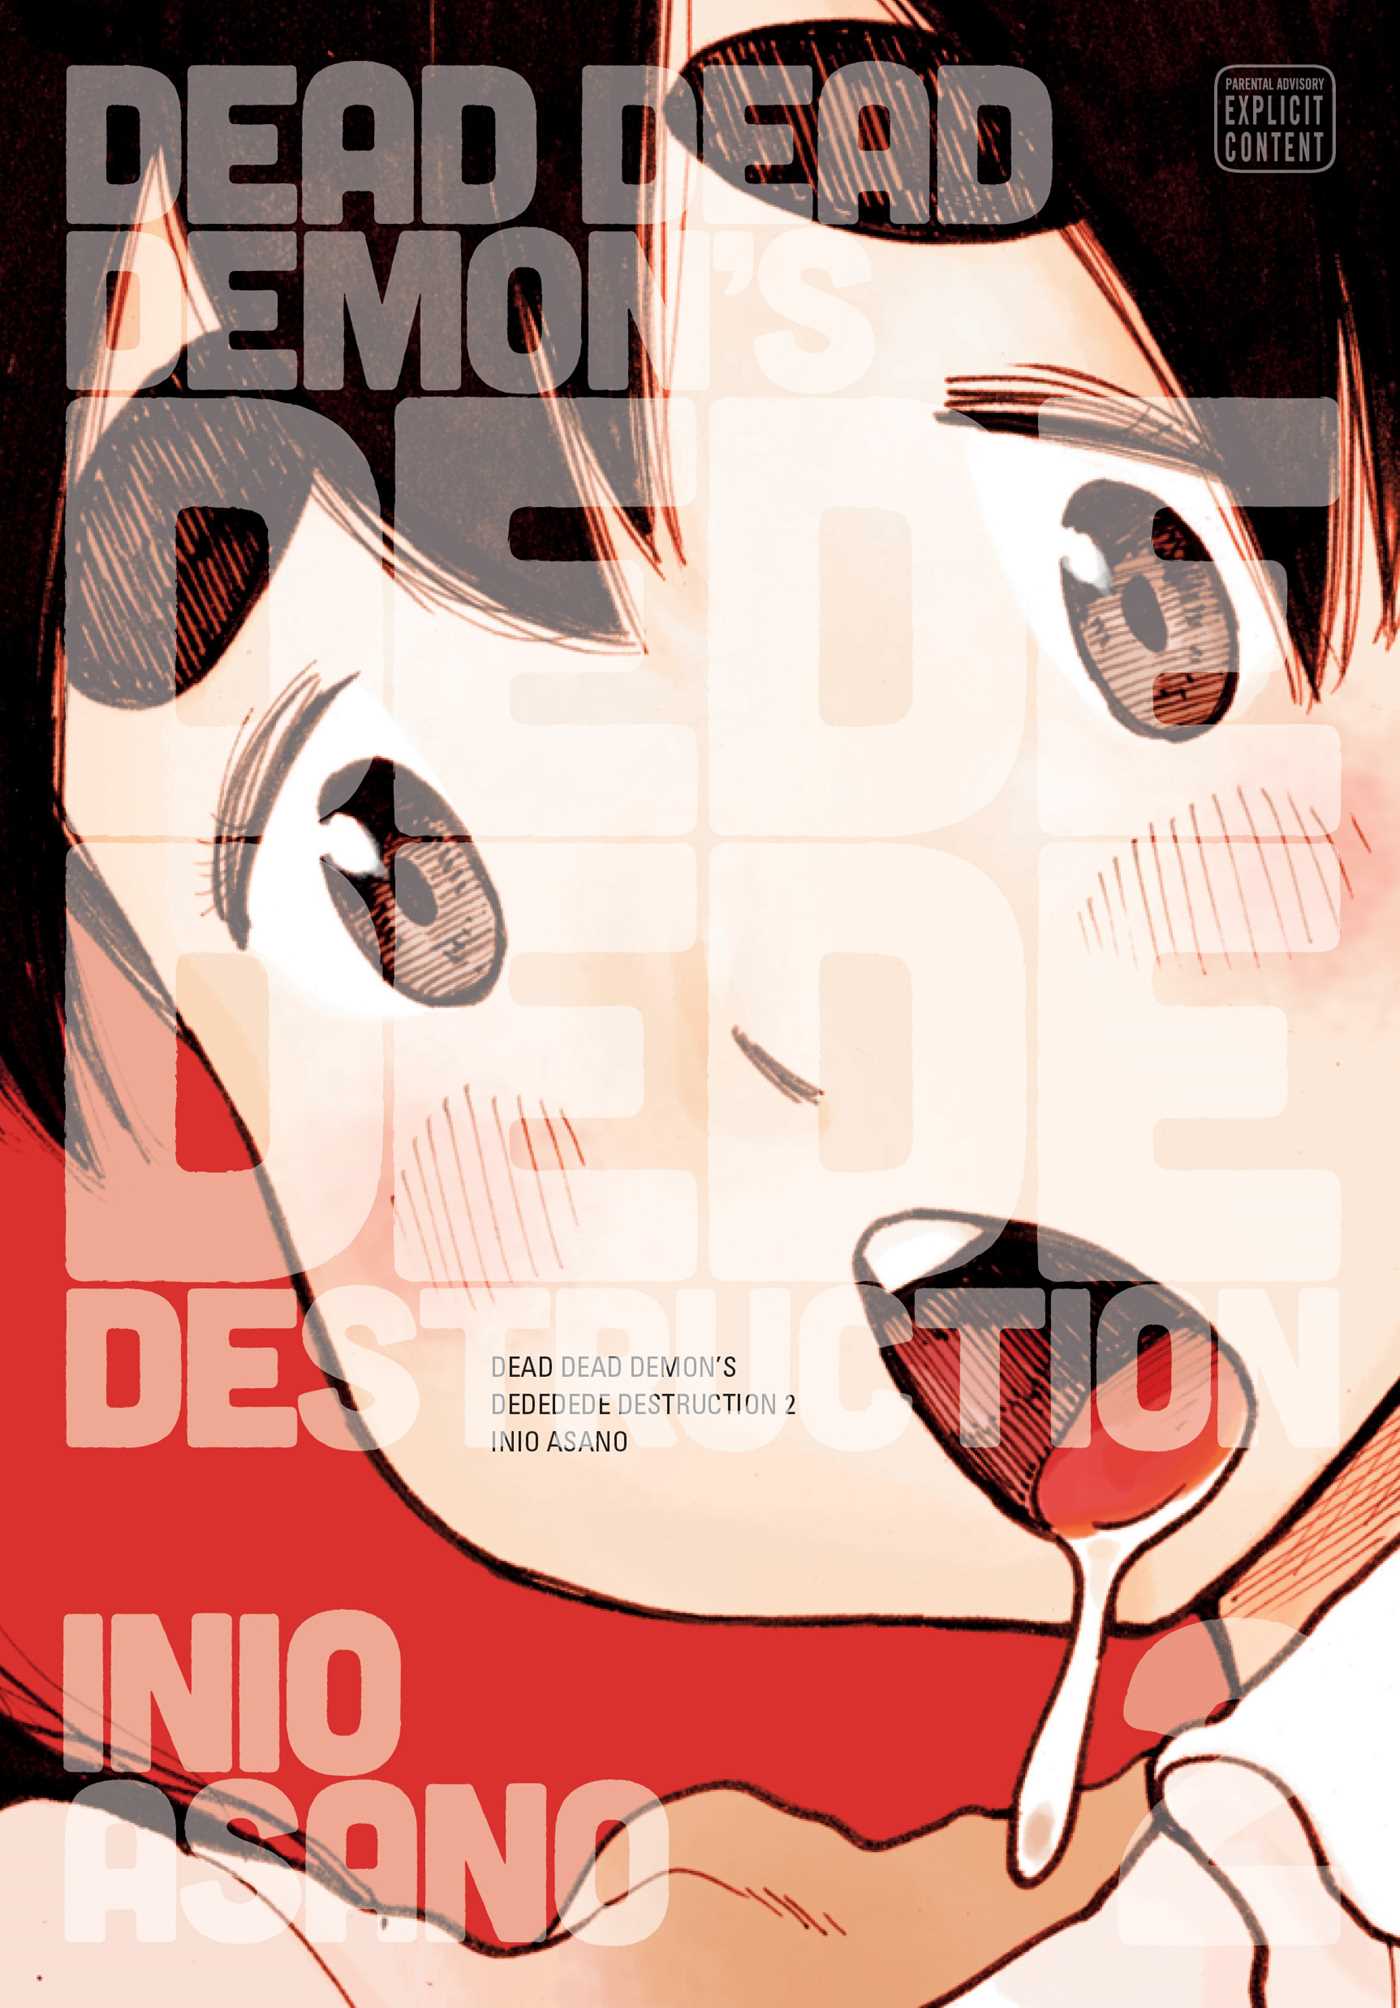 Dead Dead Demon's Dededede Destruction, Vol. 2 | Asano, Inio